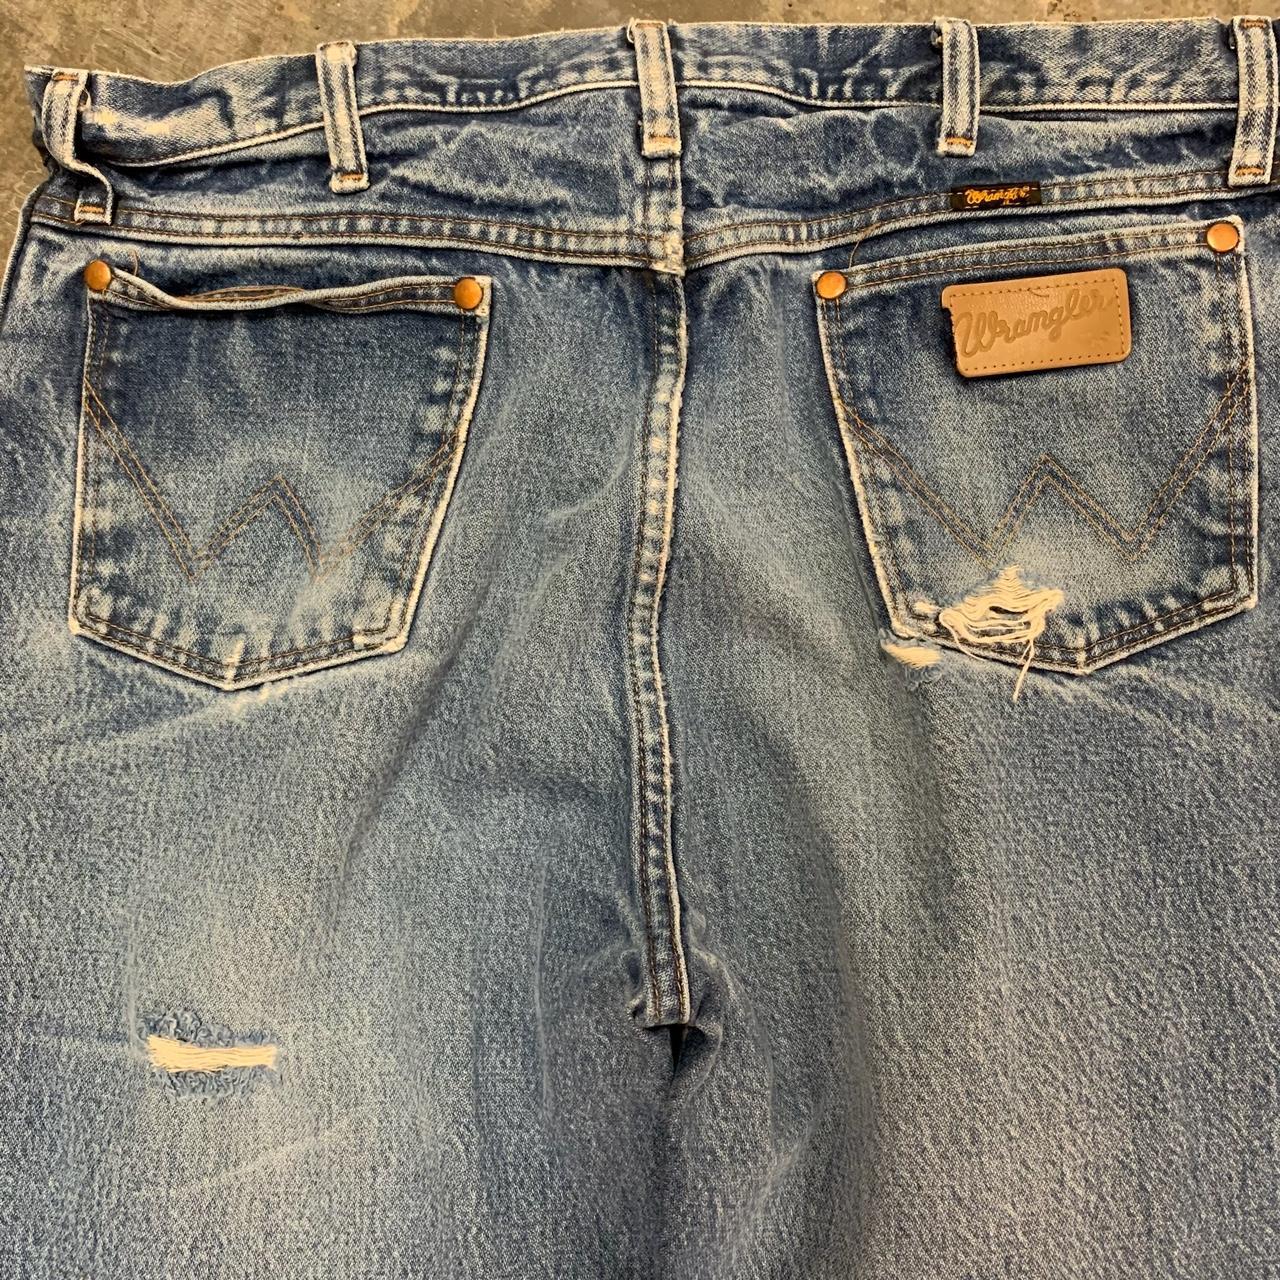 Vintage wrangler distressed jeans Size mens 36 inch... - Depop